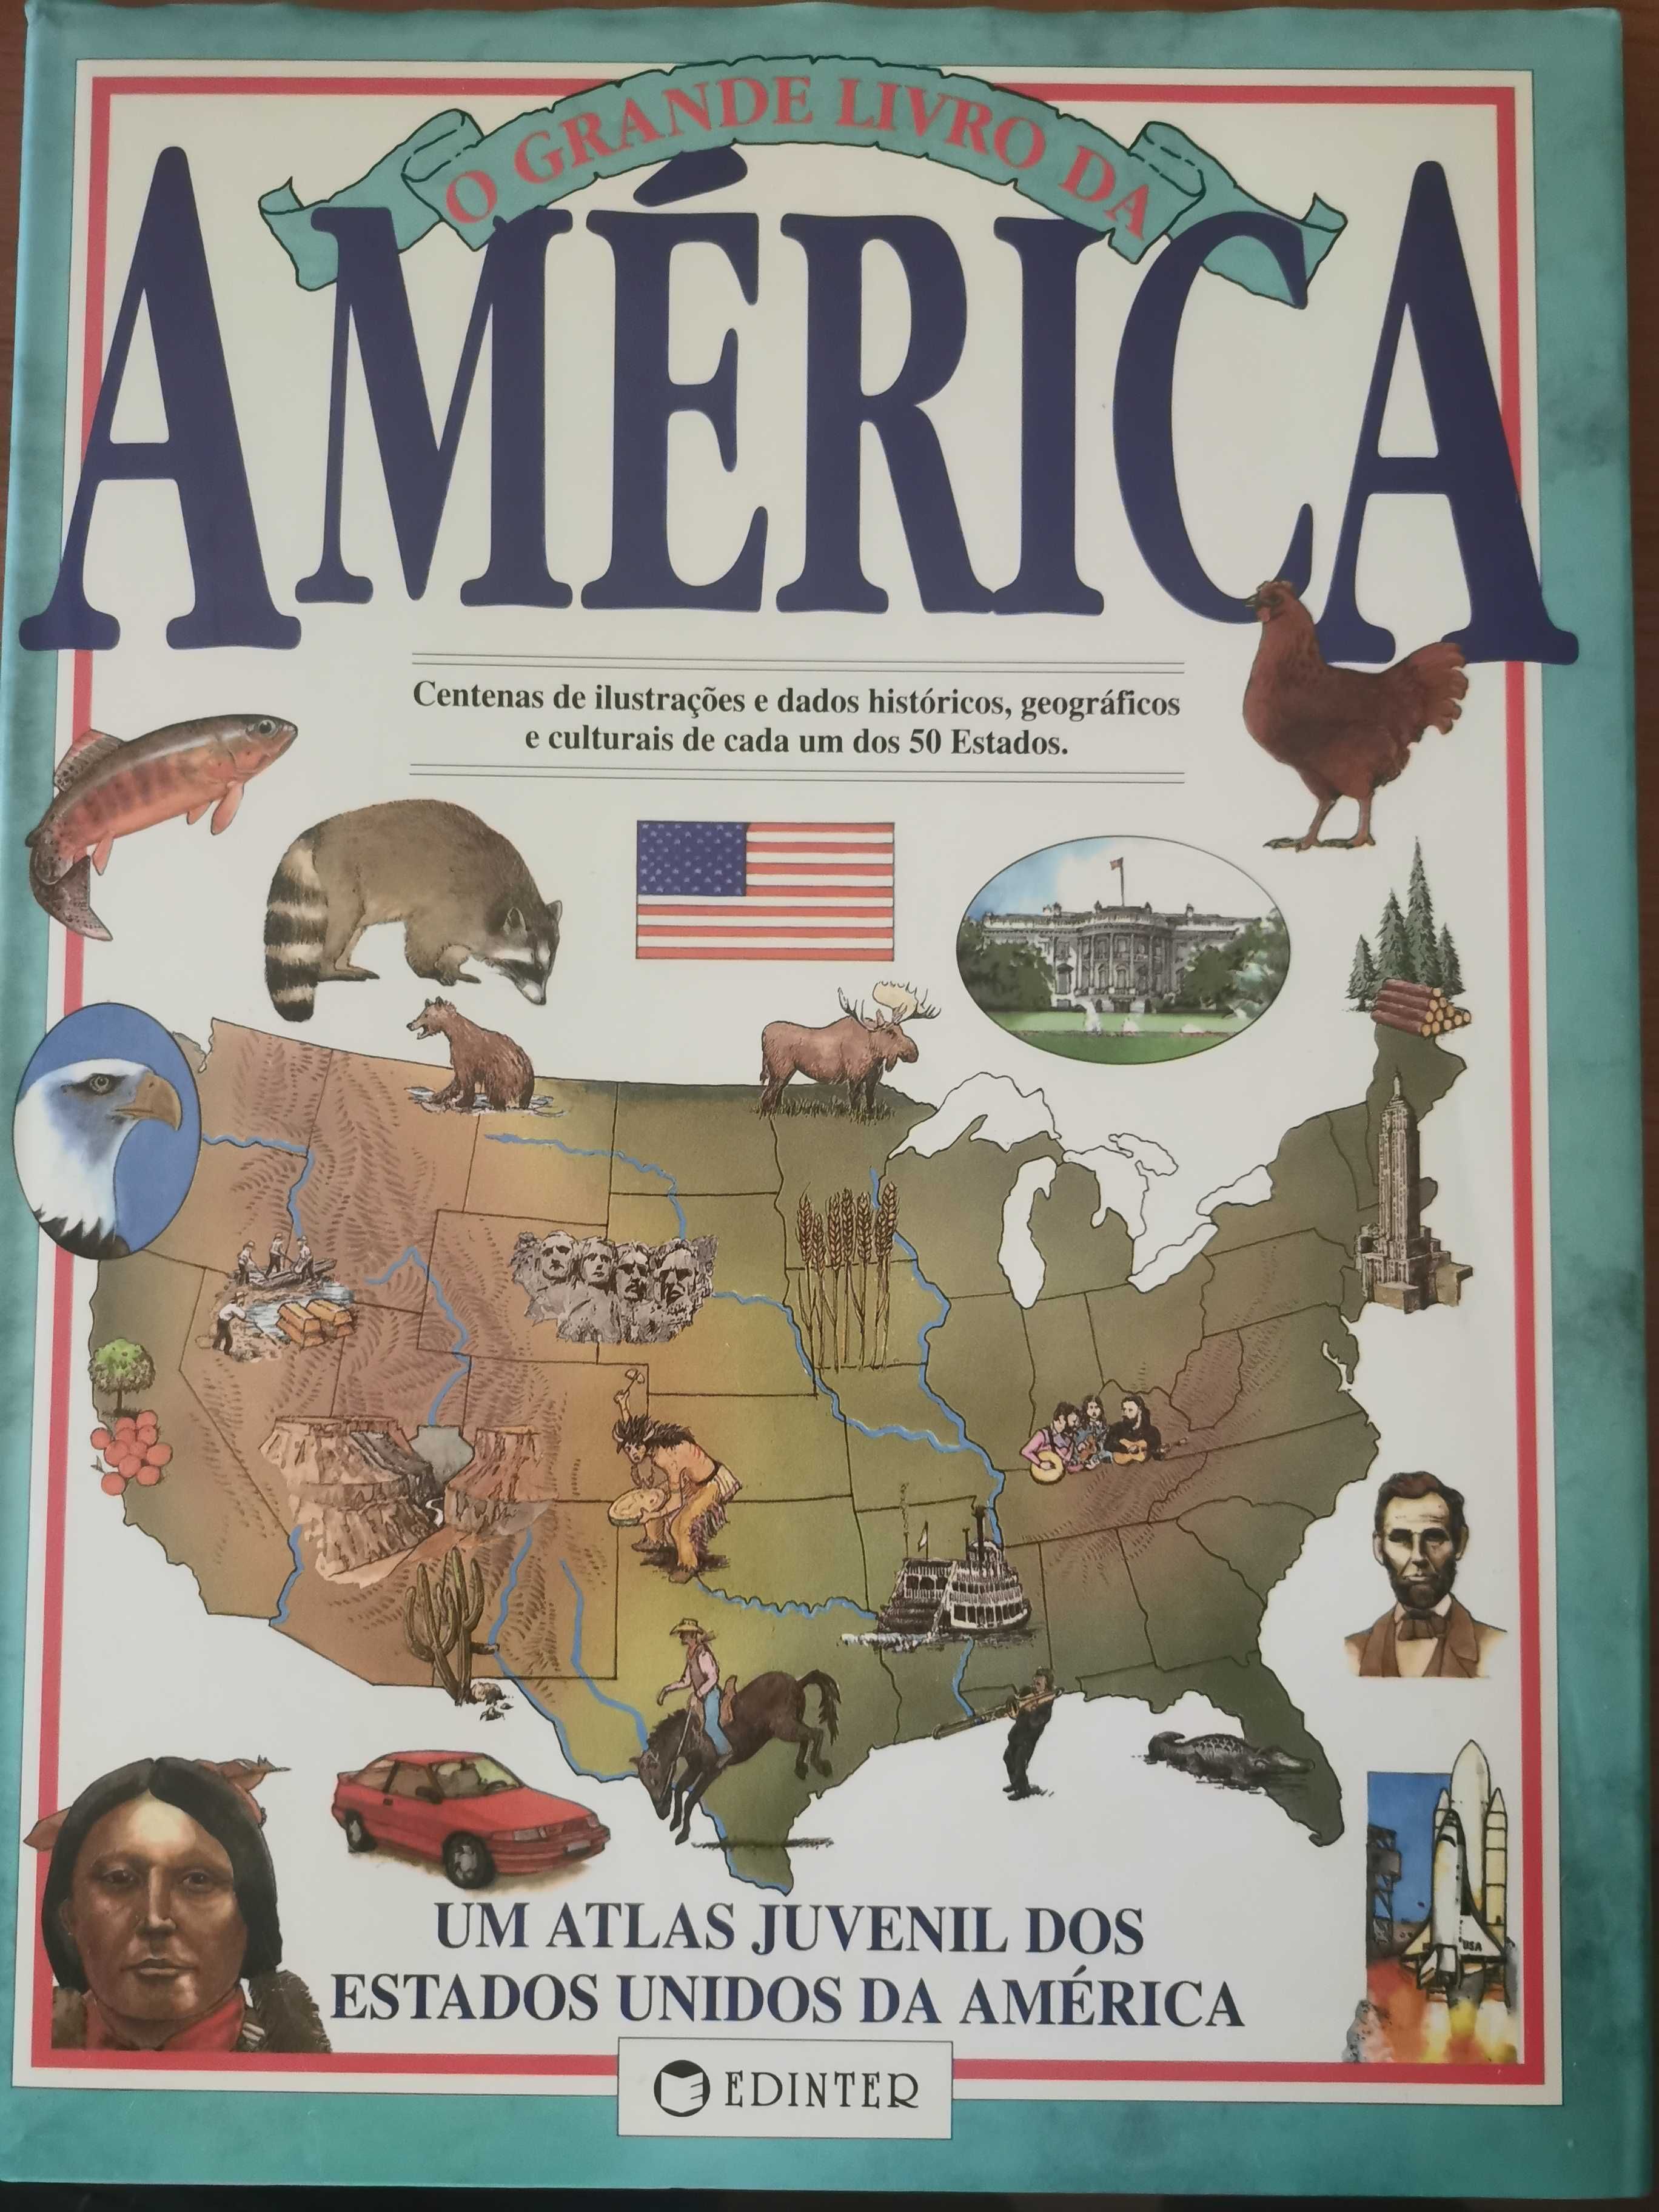 O Grande Livro da América